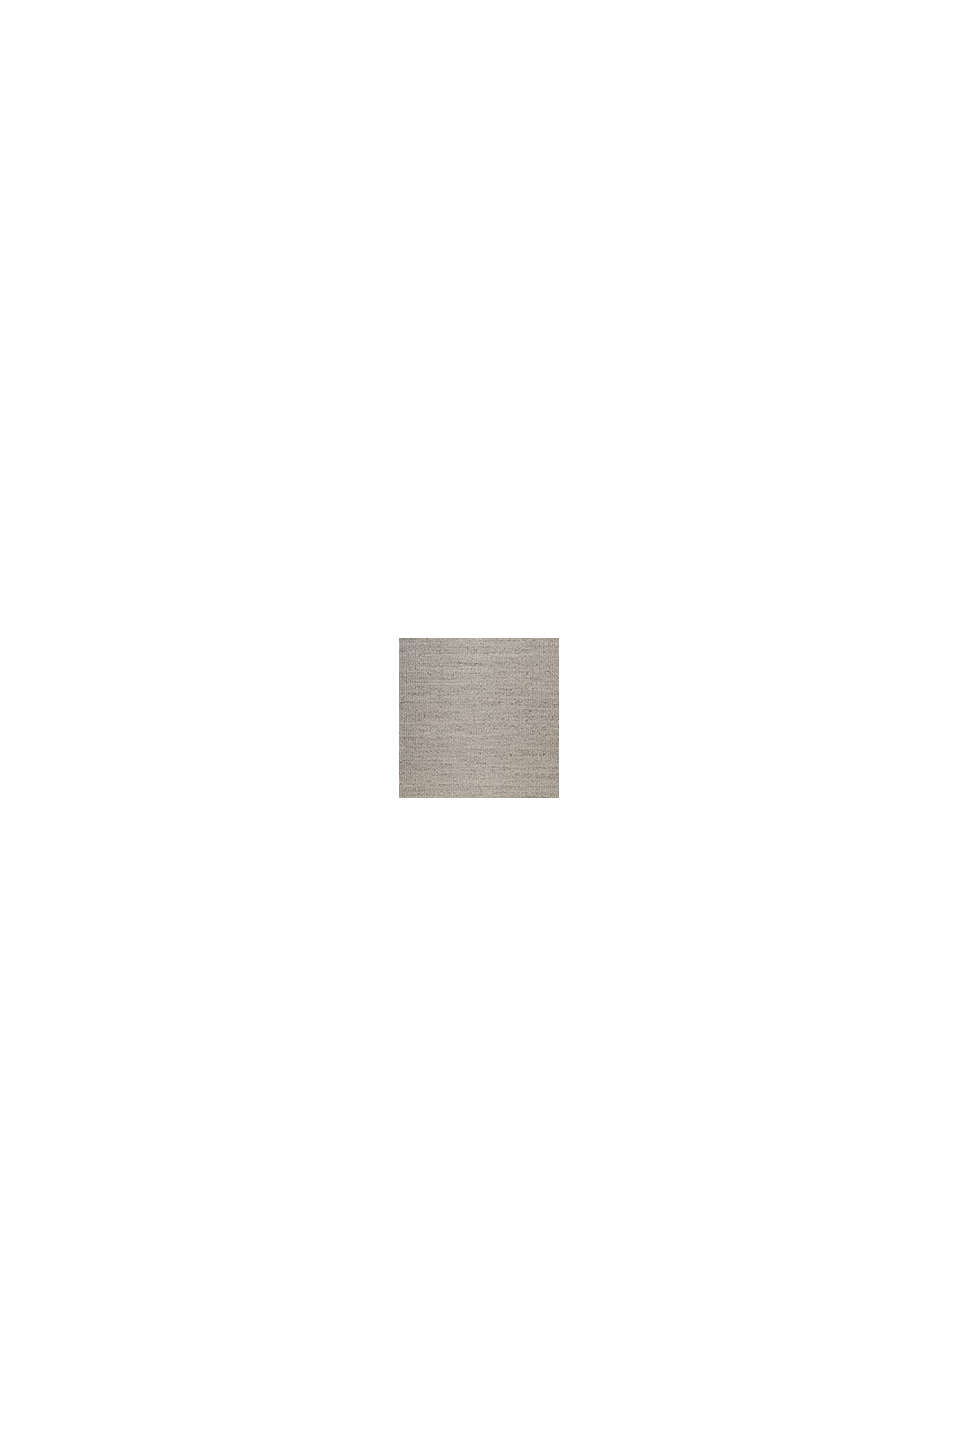 Handgewebter Teppich aus Woll-Mix, SILVER, swatch